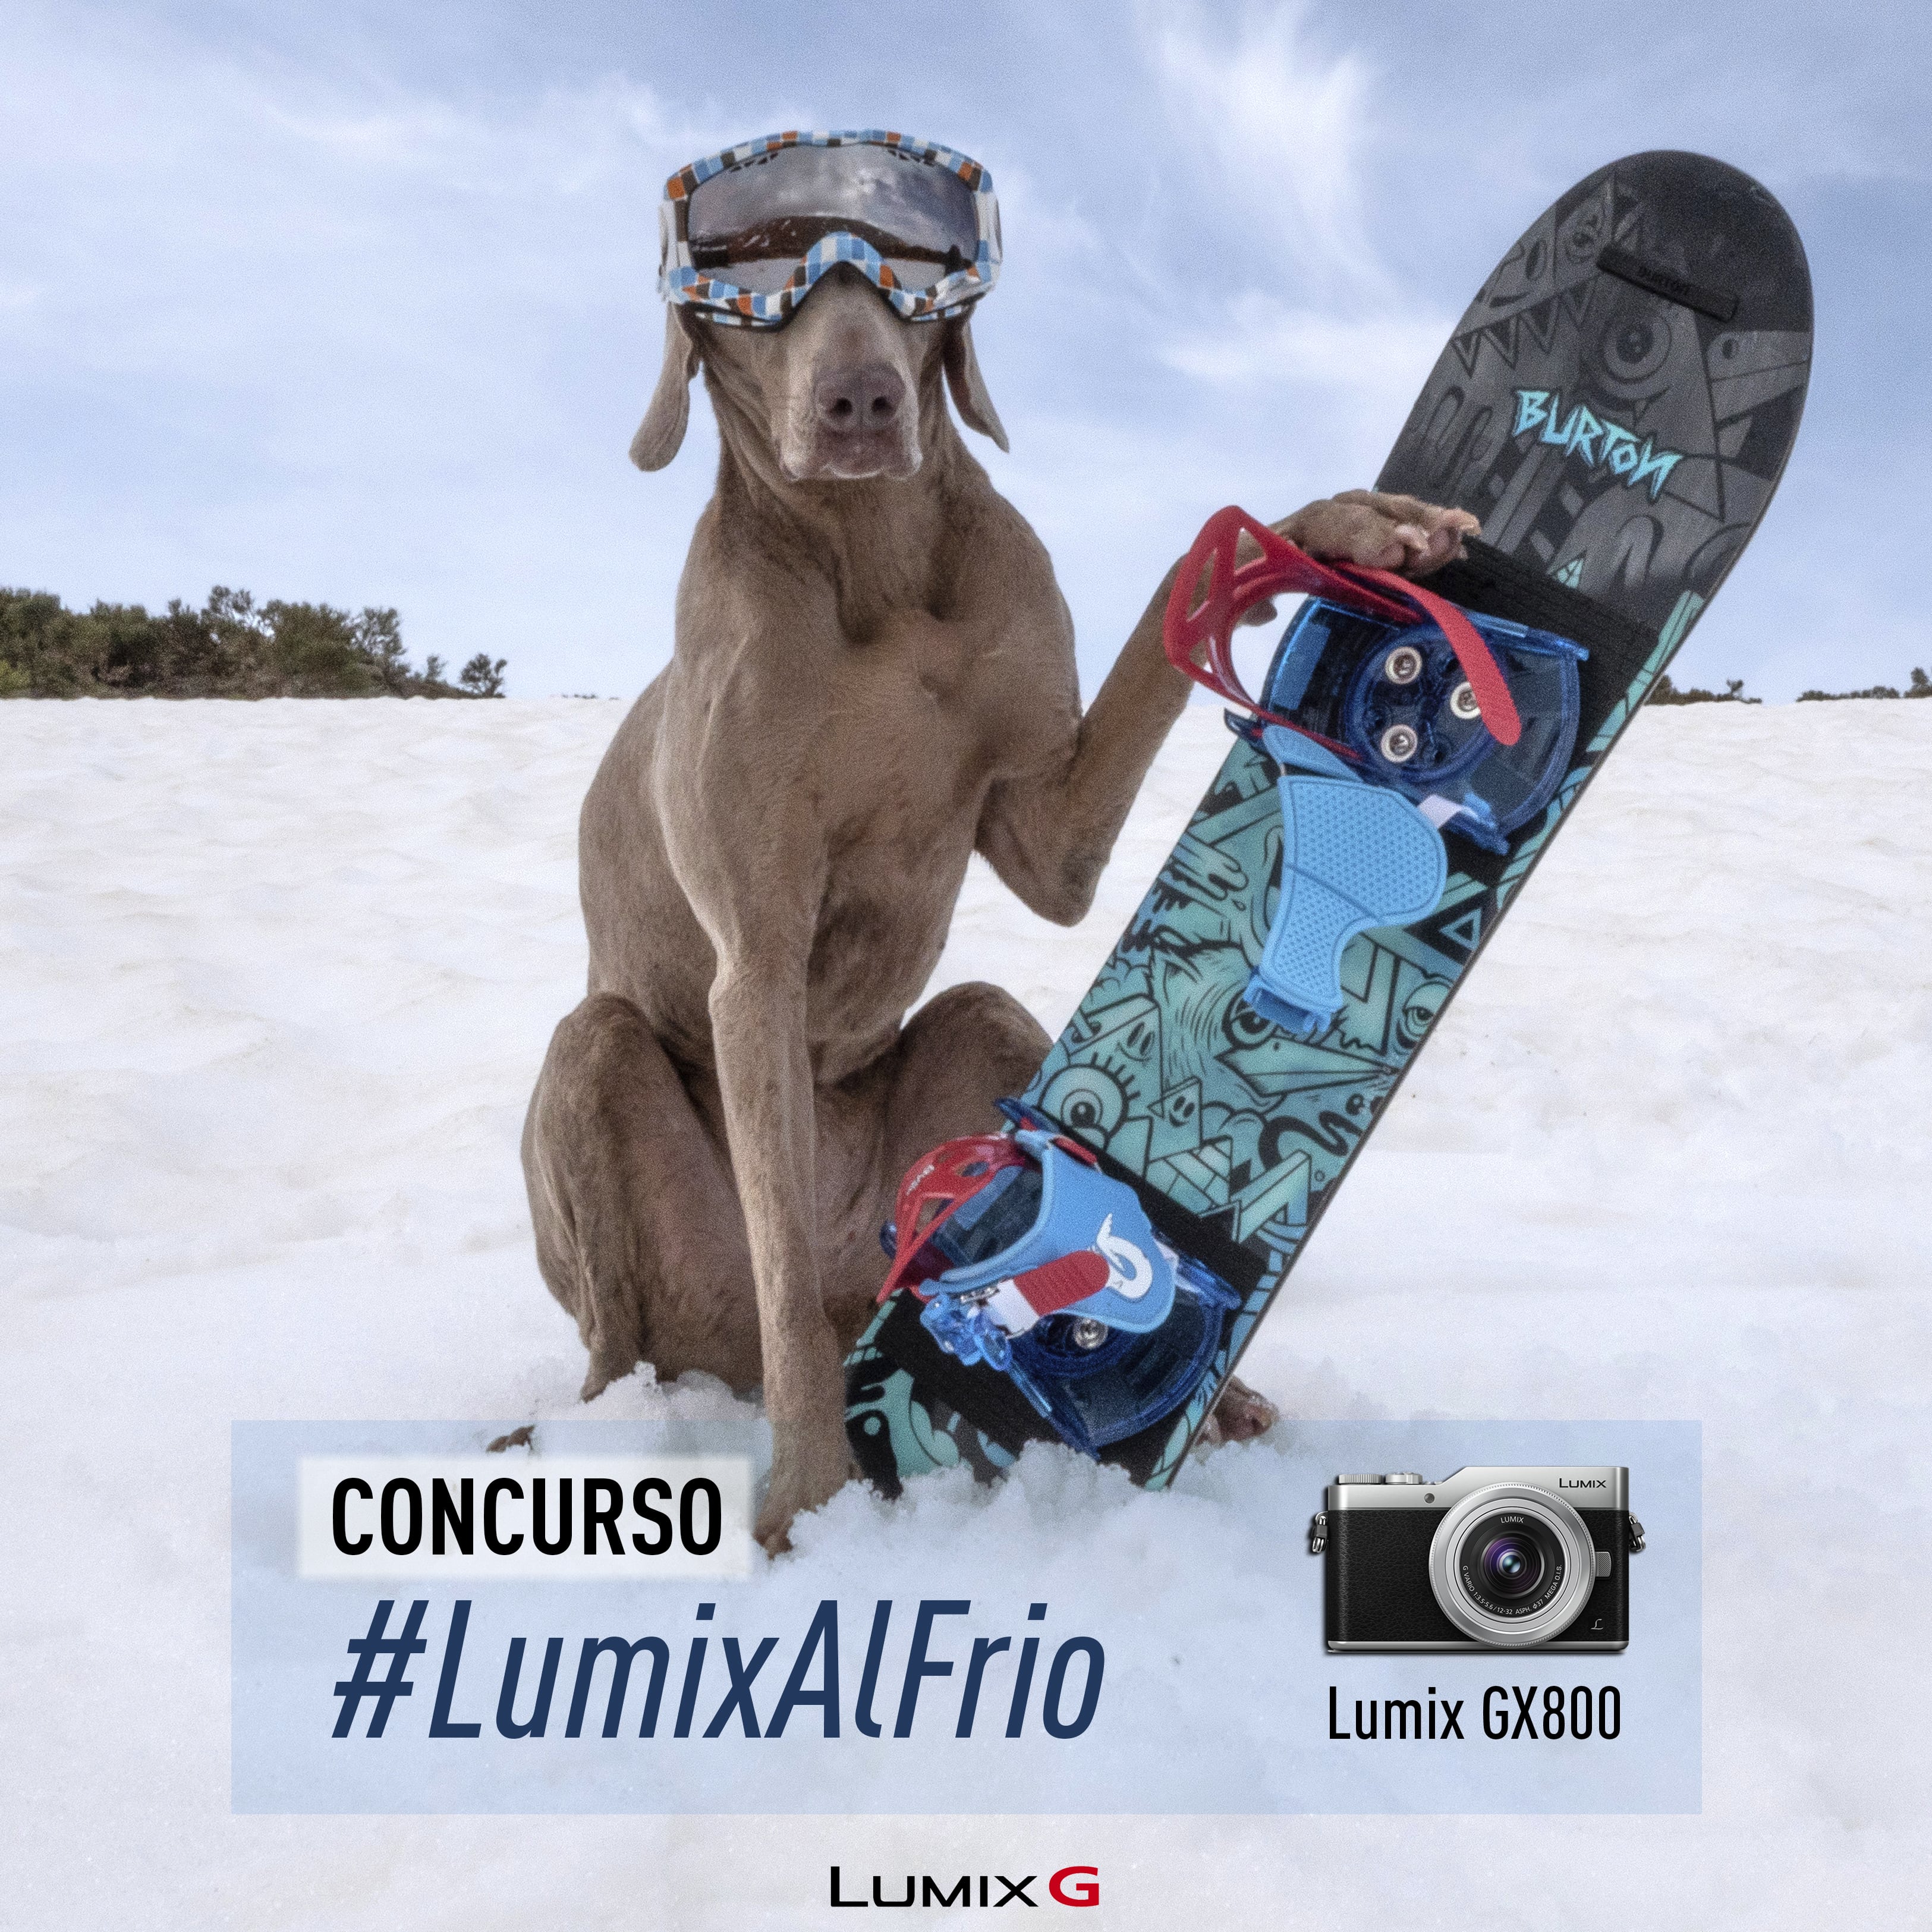 Participa en el concurso #LumixAlFrio en Instagram y gana una Lumix GX800